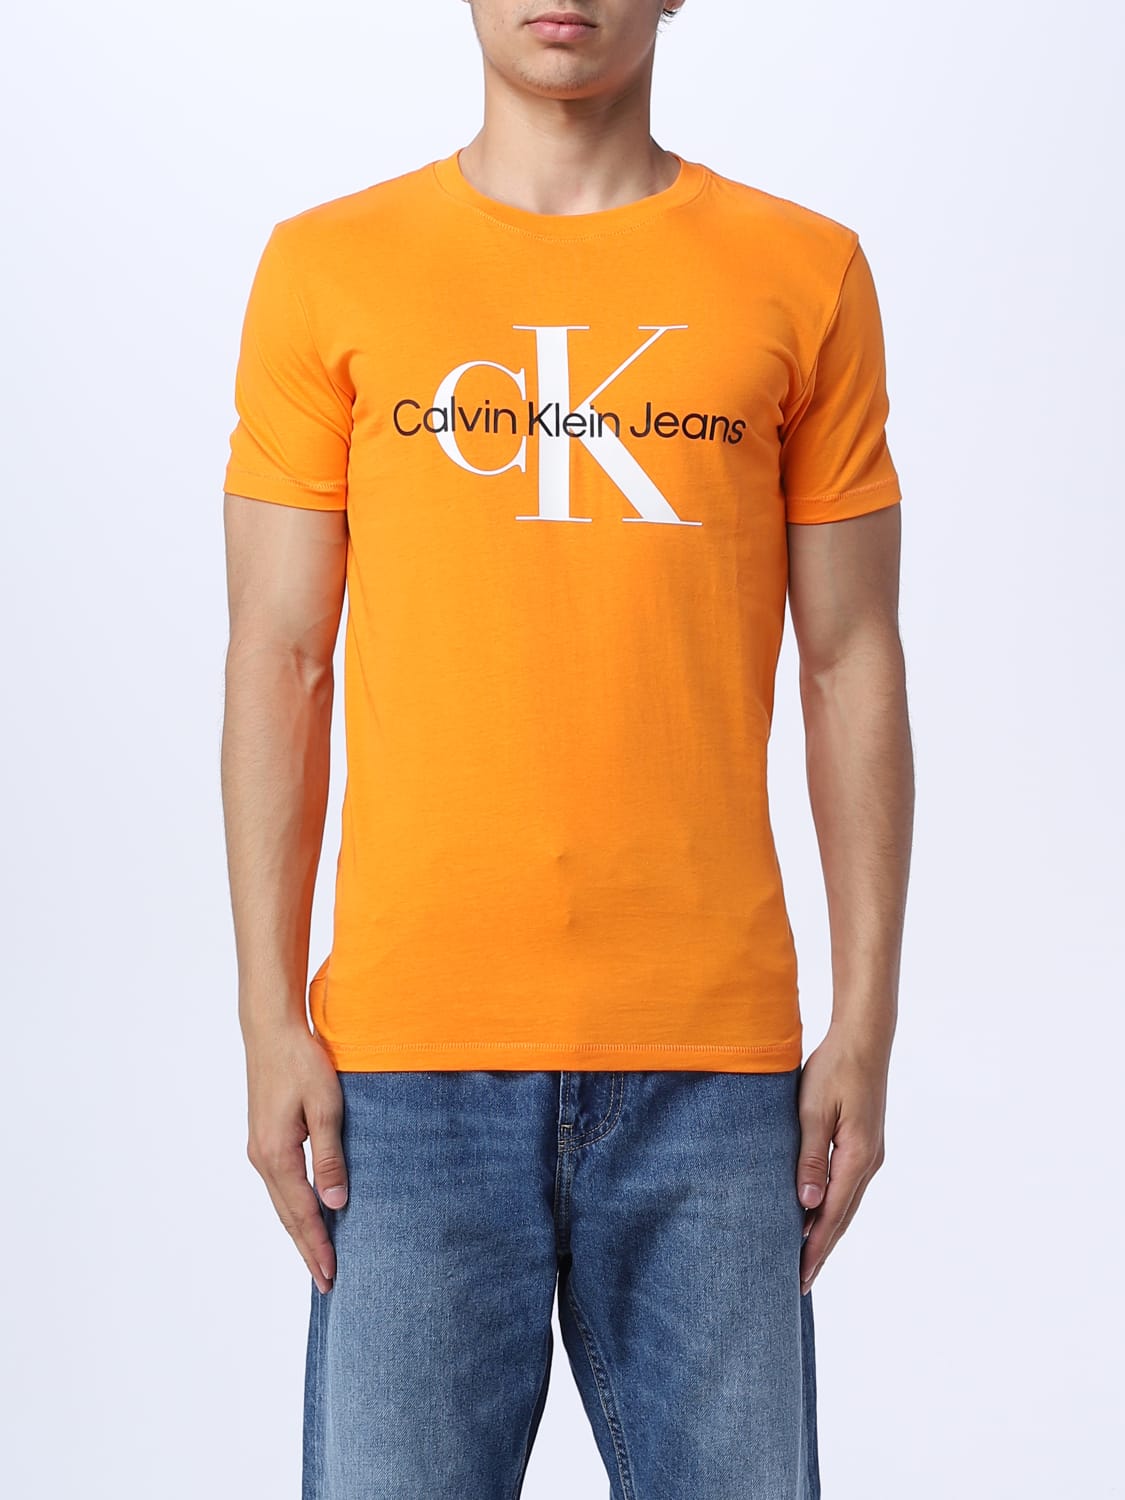 Calvin Klein Jeans - T-shirt man